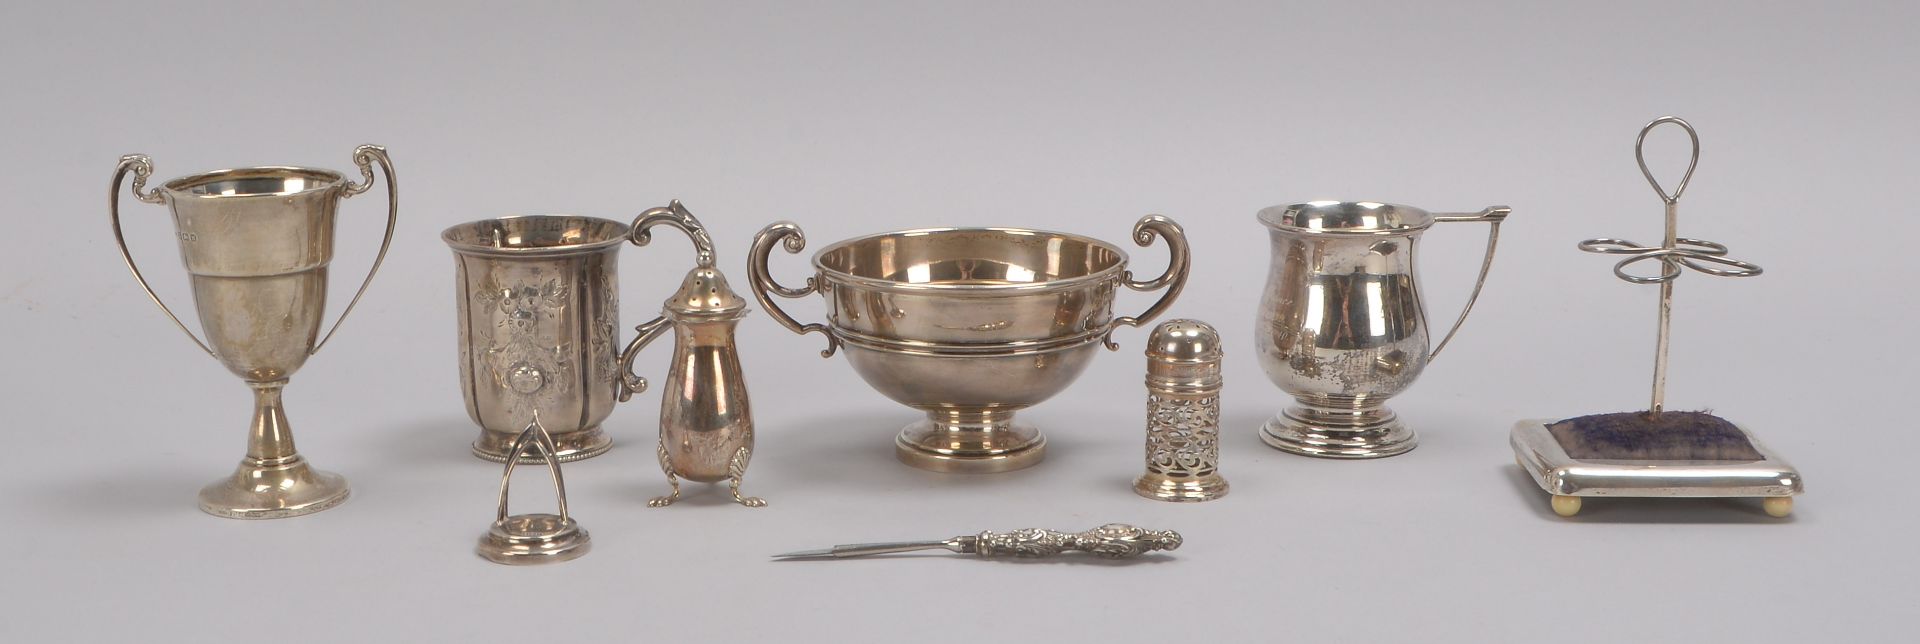 Konvolut antiker Silberteile, diverse Funktionen und Ausführungen, darunter u.a.: Schale, Becher, St